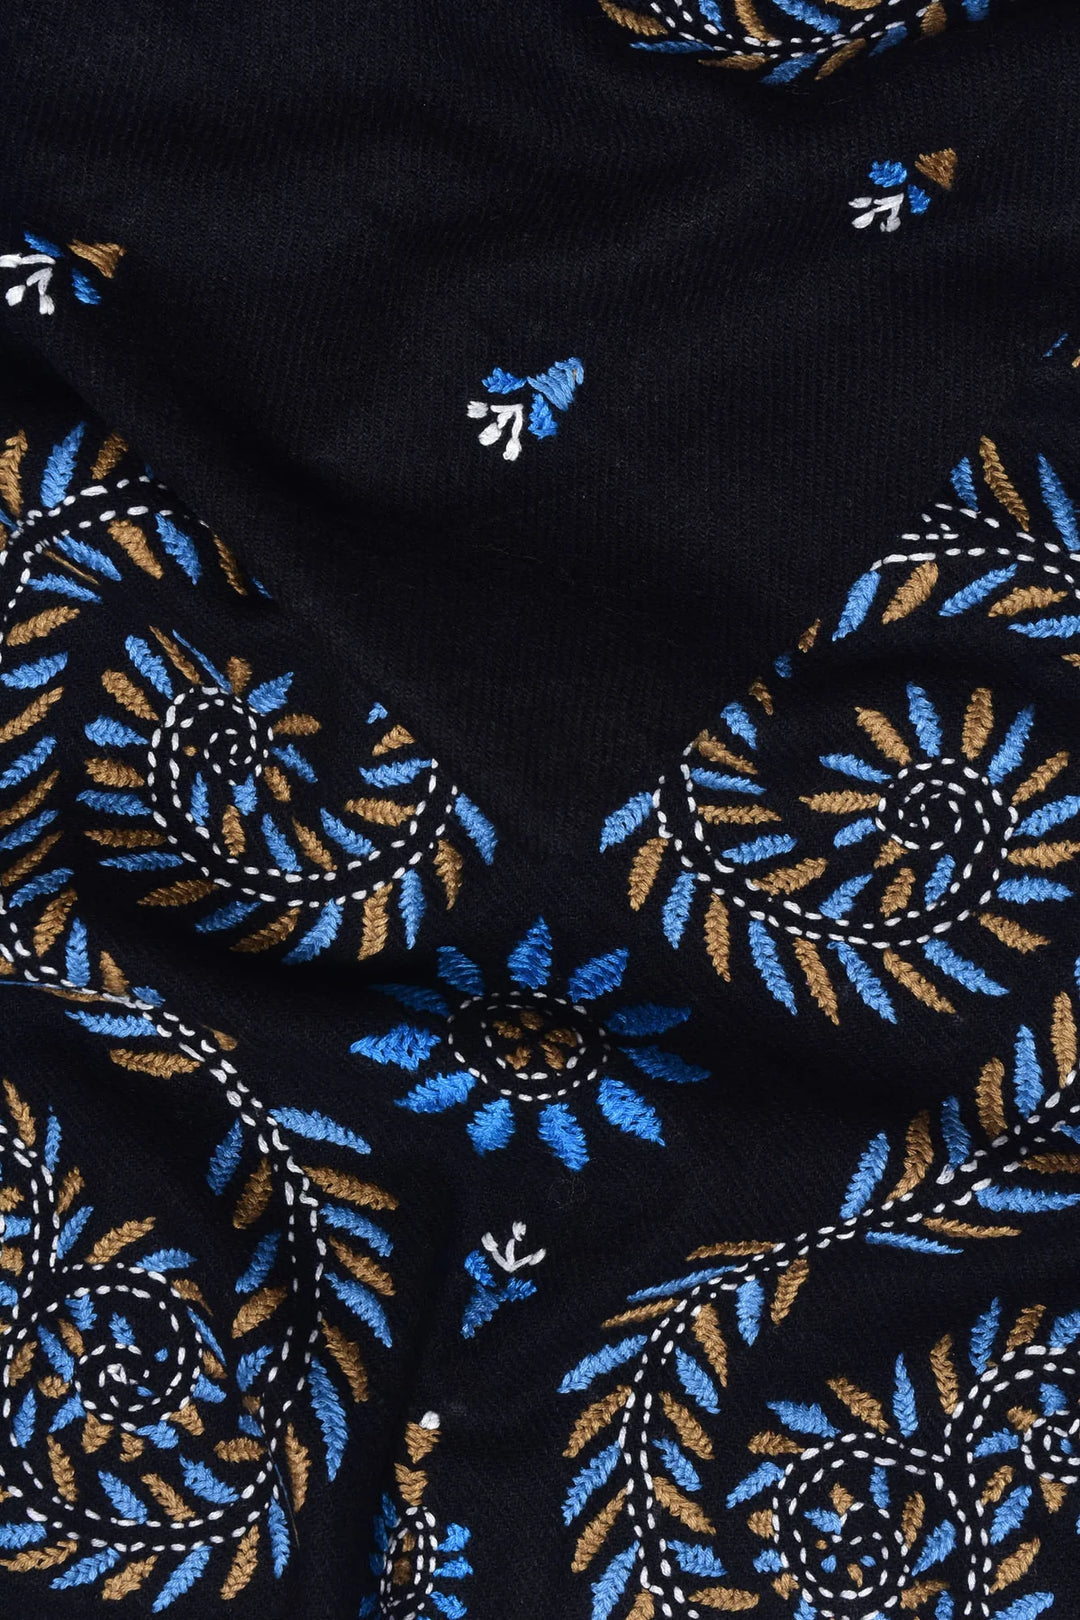 Black Cashmere Stole - Elegant & Versatile | Puma Handwoven Soft Cashmere Stole - Black